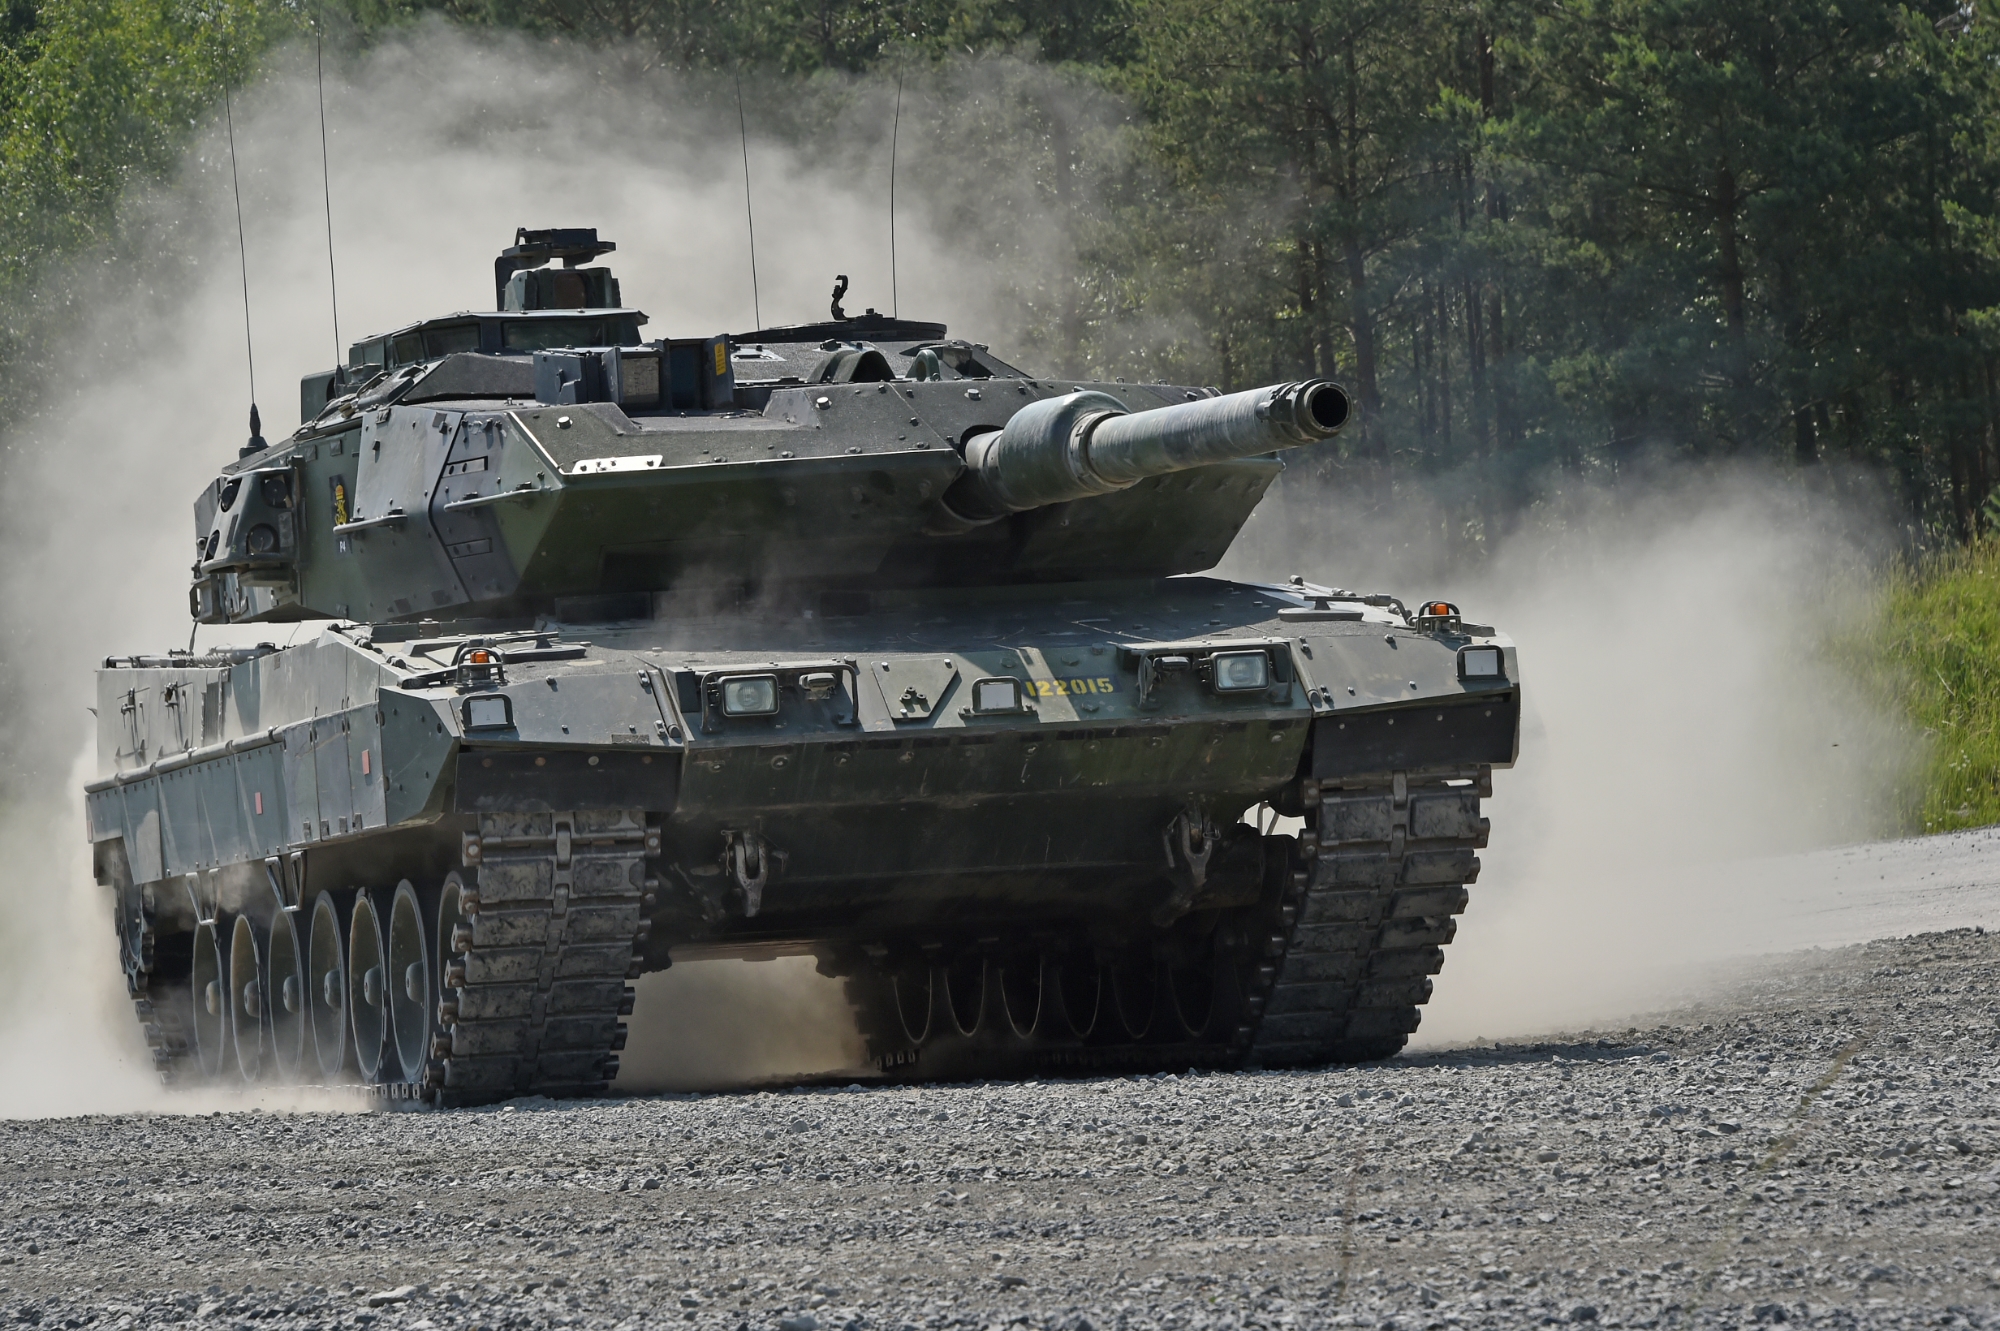 La Svezia potrebbe trasferire all'Ucraina i carri armati Stridsvagn 122: si tratta di una versione ammodernata del Leopard 2A5, che viene prodotto su licenza